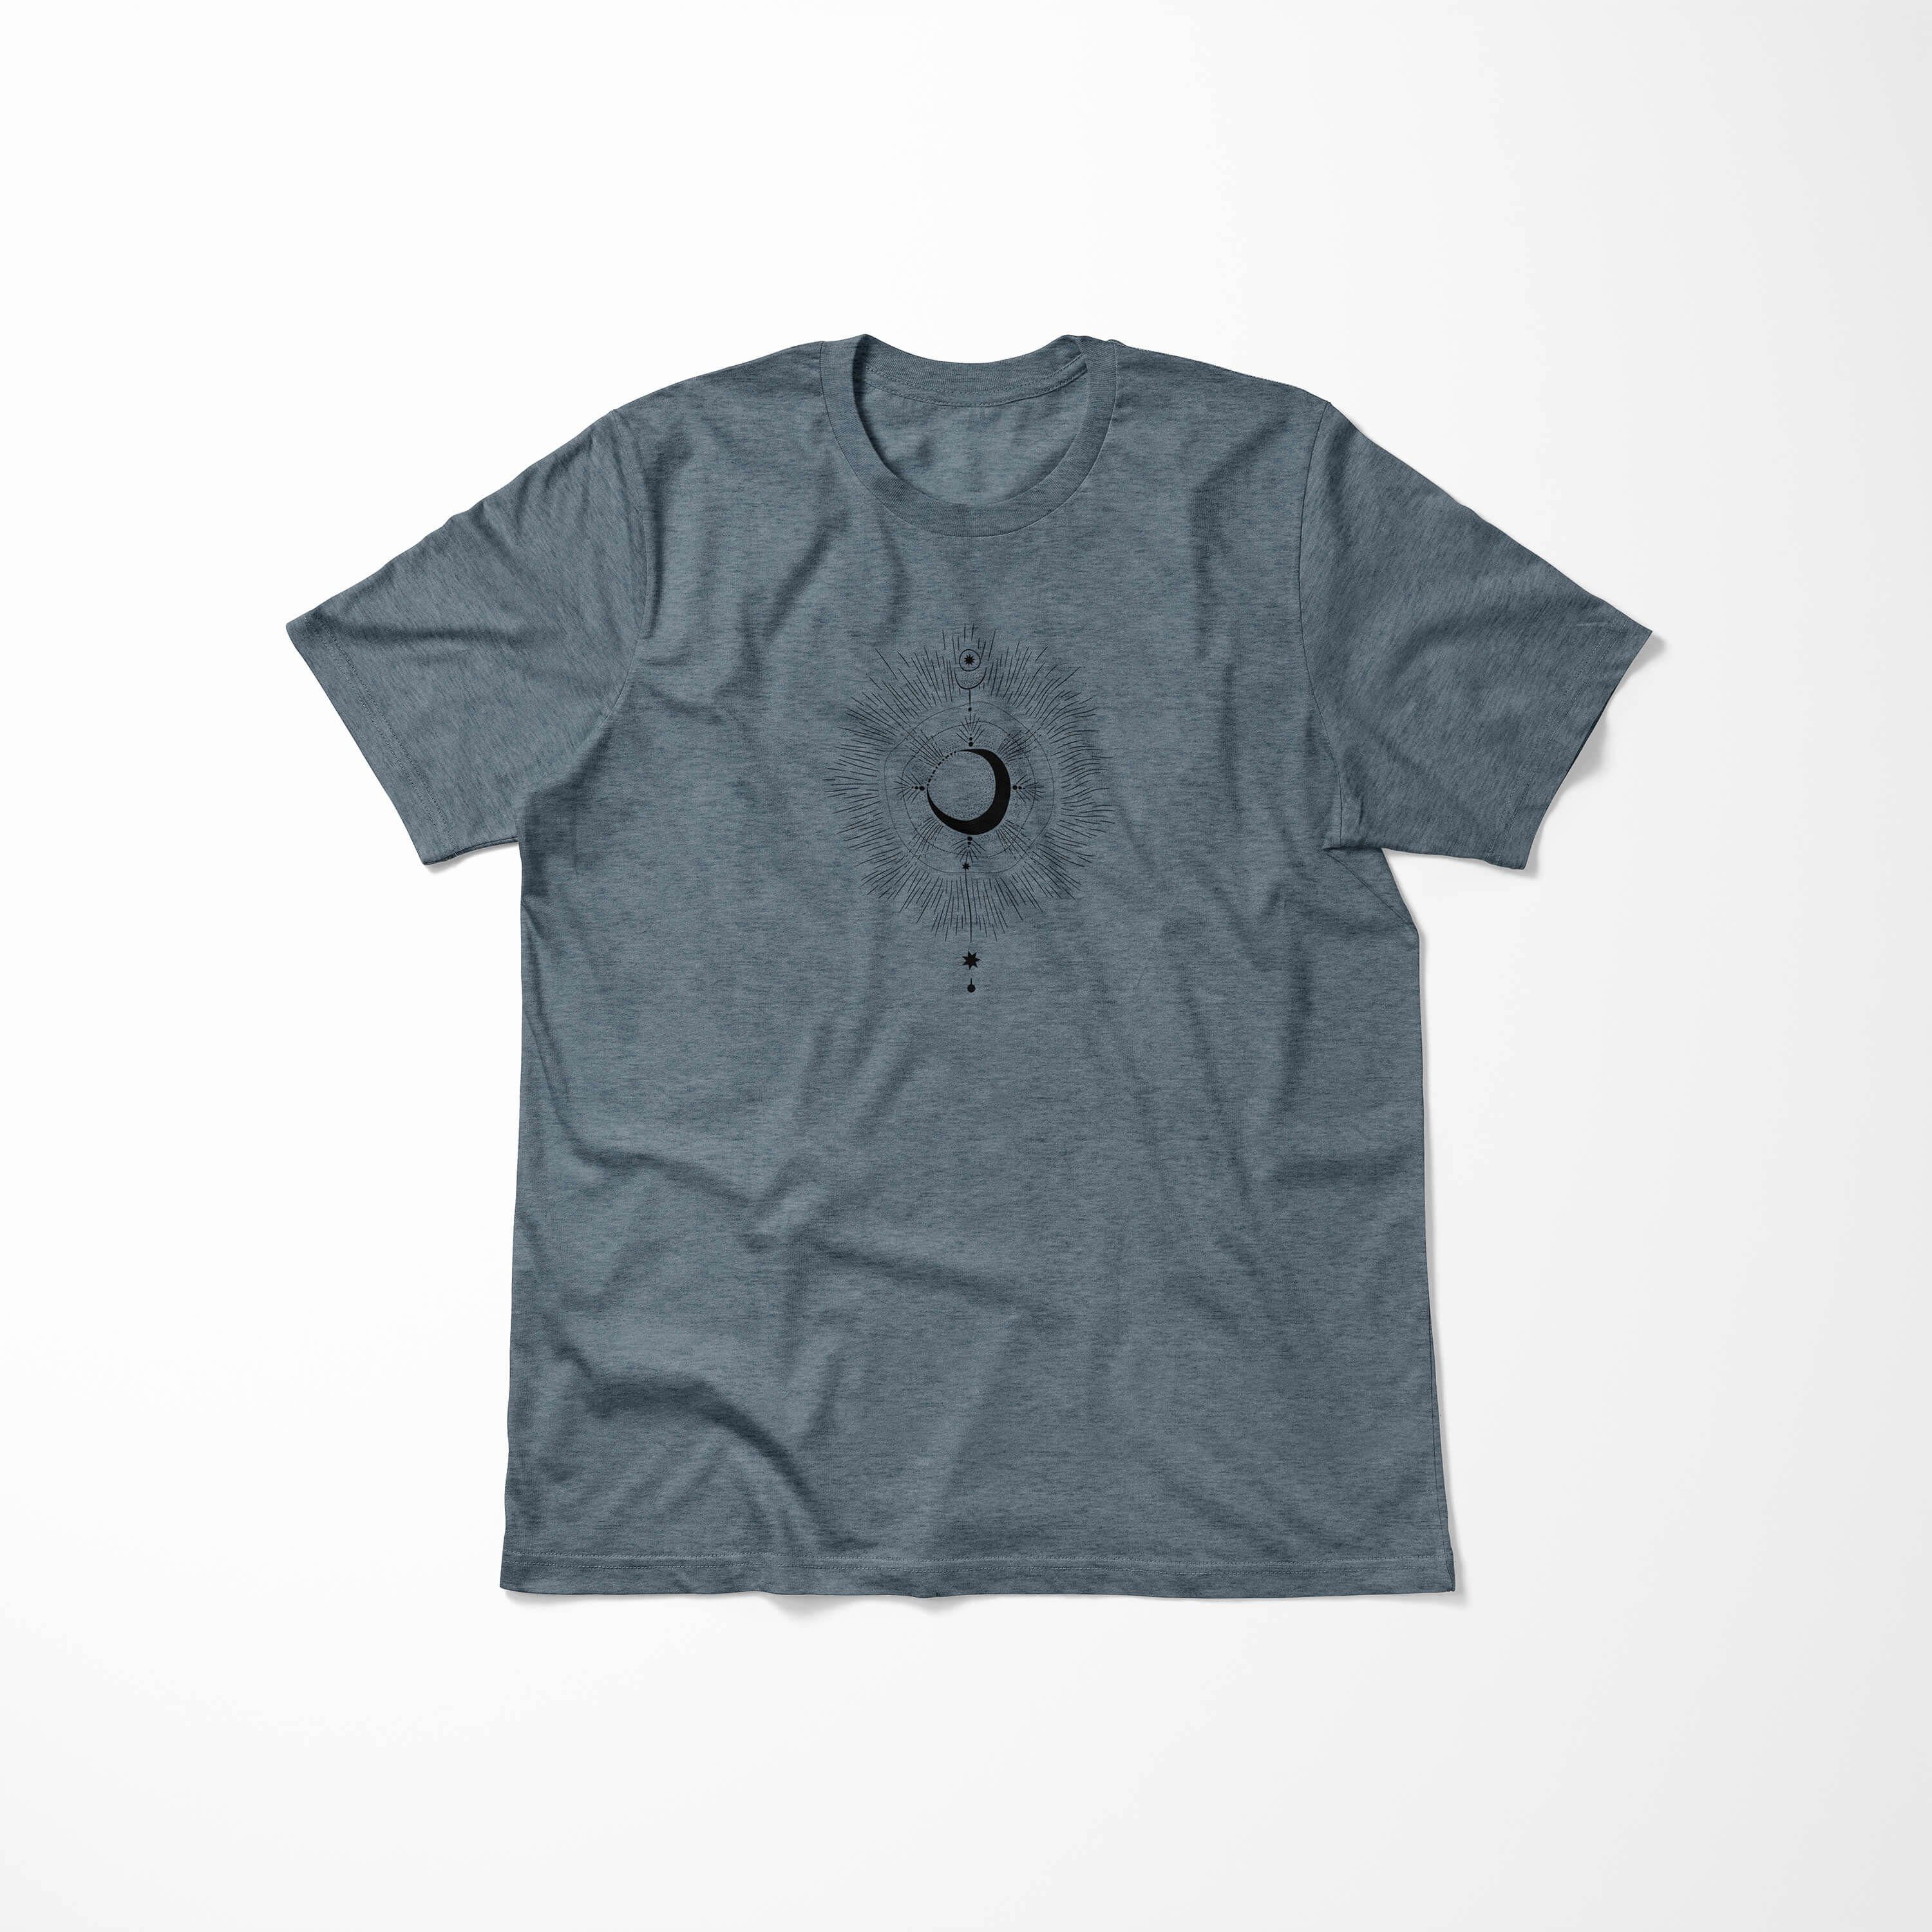 Tragekomfort angenehmer Sinus Symbole T-Shirt Serie T-Shirt feine Indigo Art Premium Struktur No.0067 Alchemy